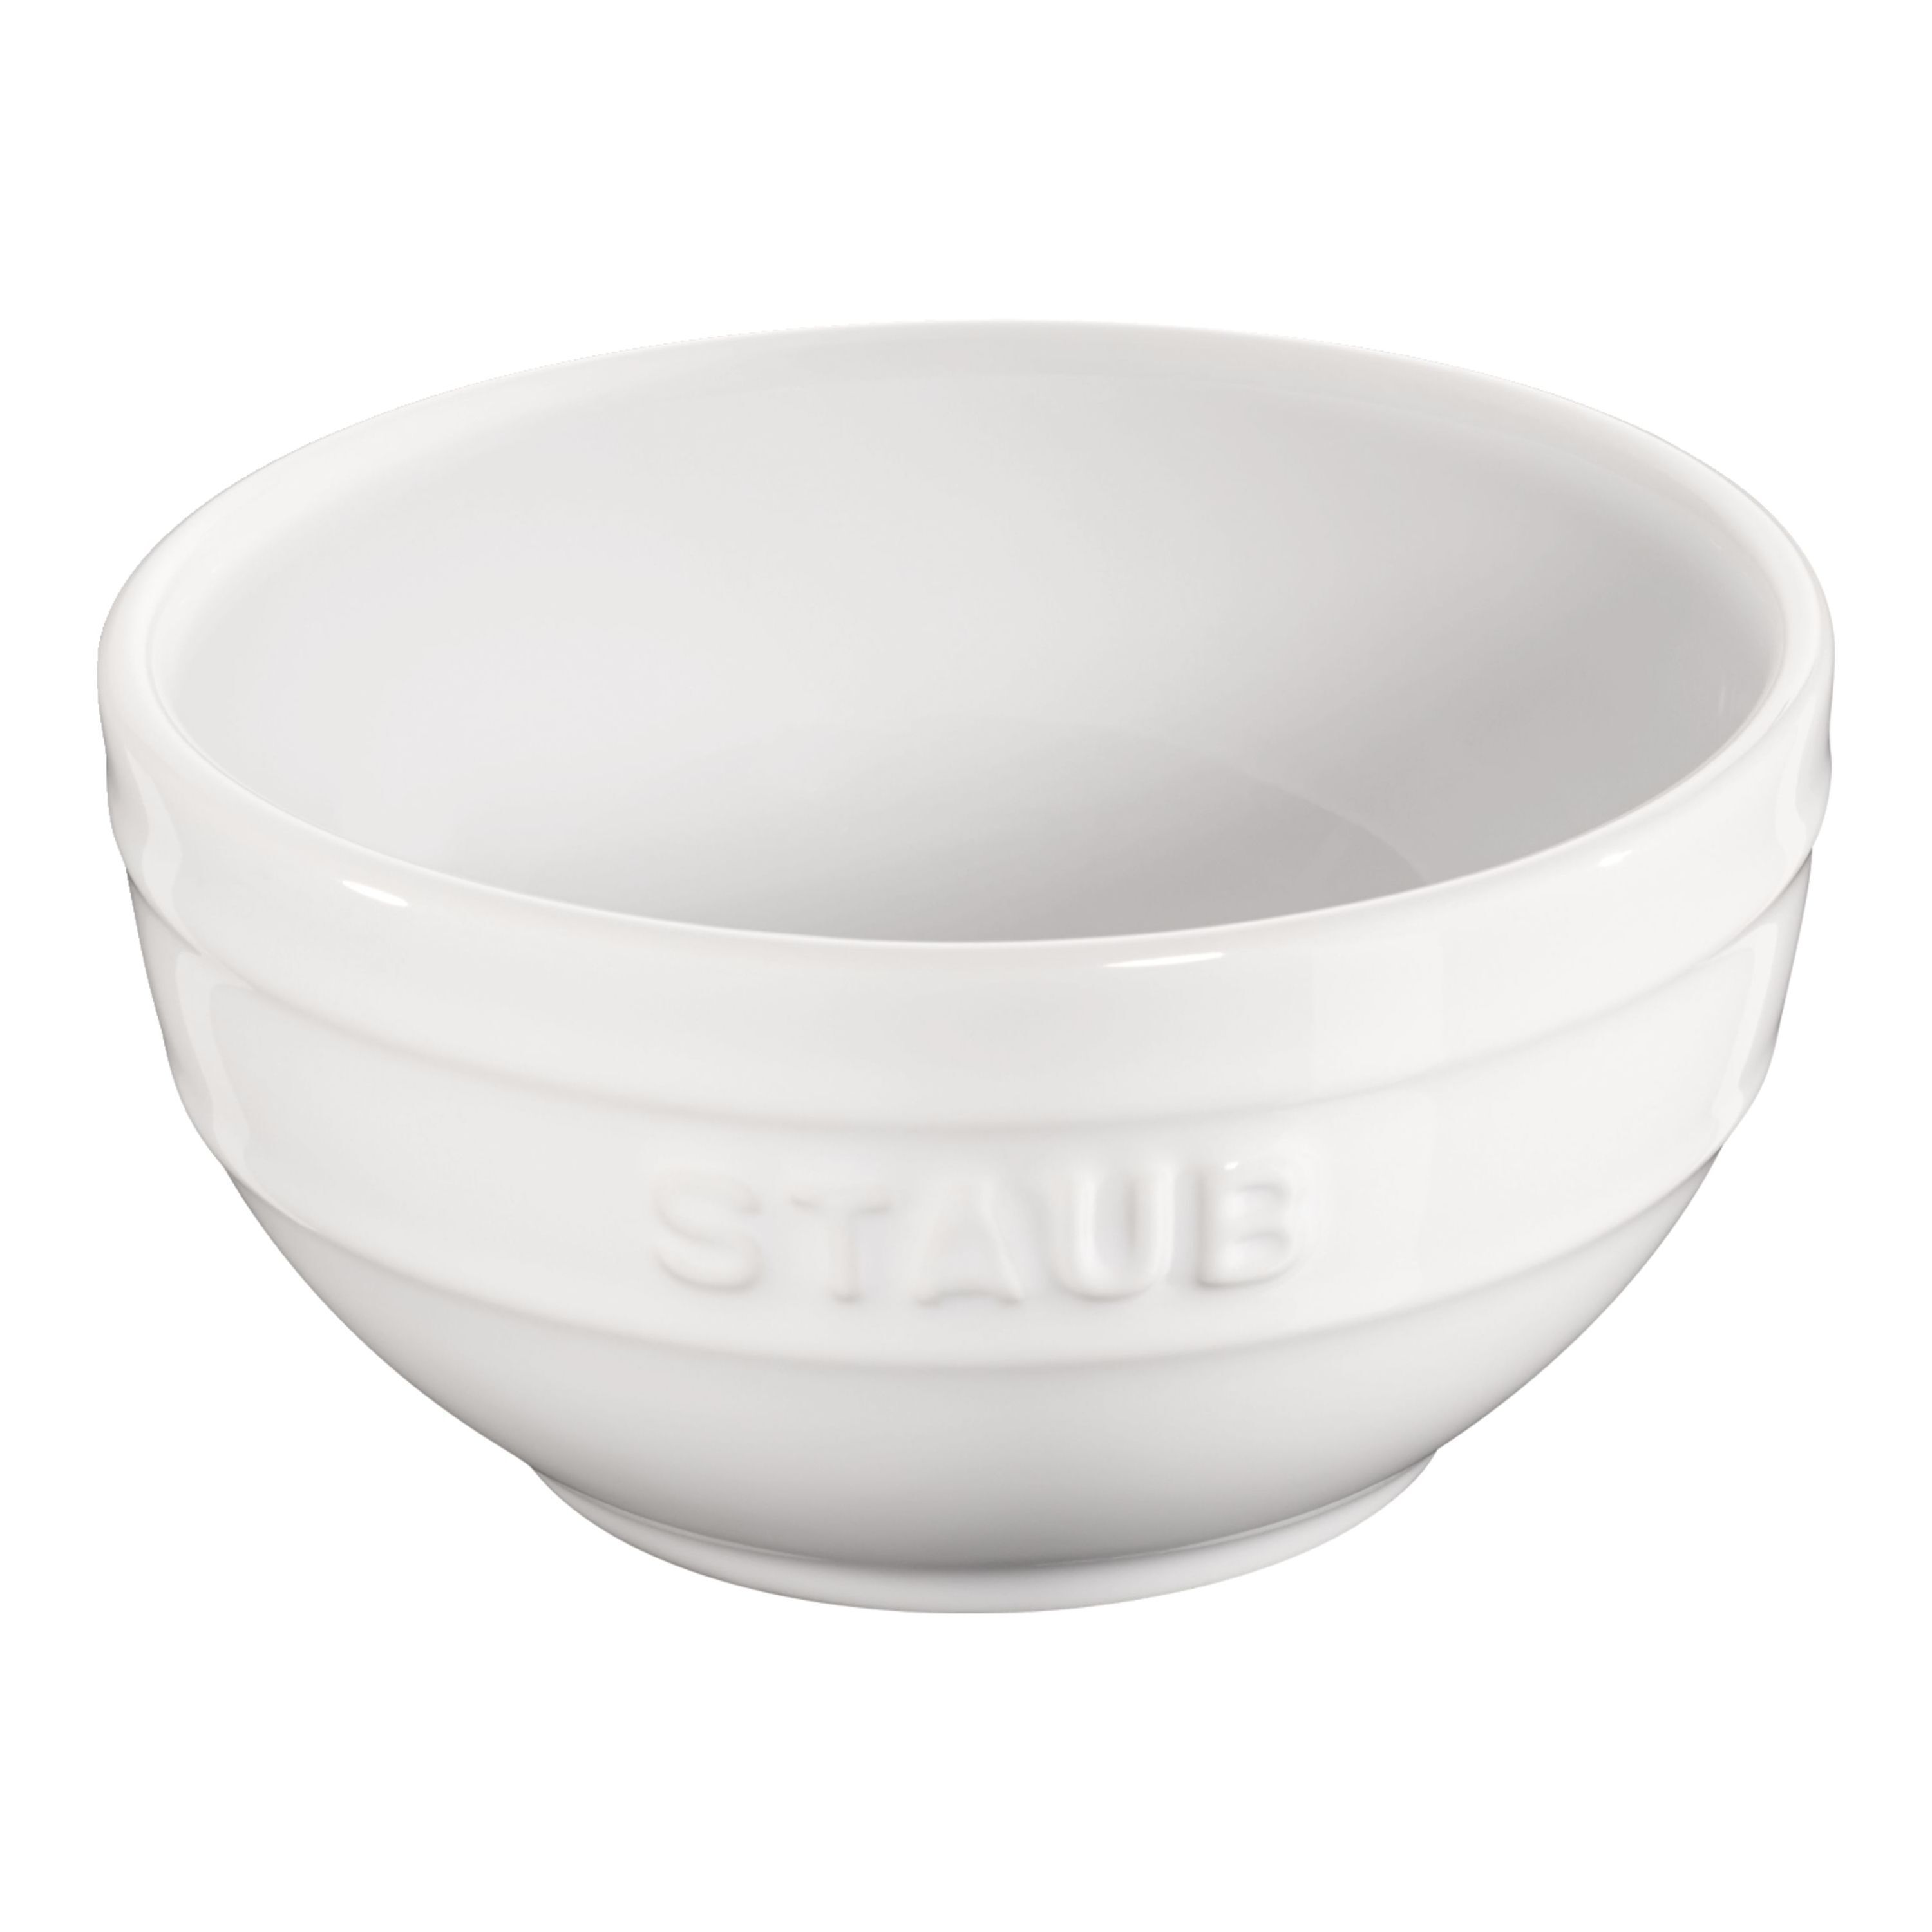 Staub Ceramique Ciotola rotonda - 12 cm, Colore bianco puro